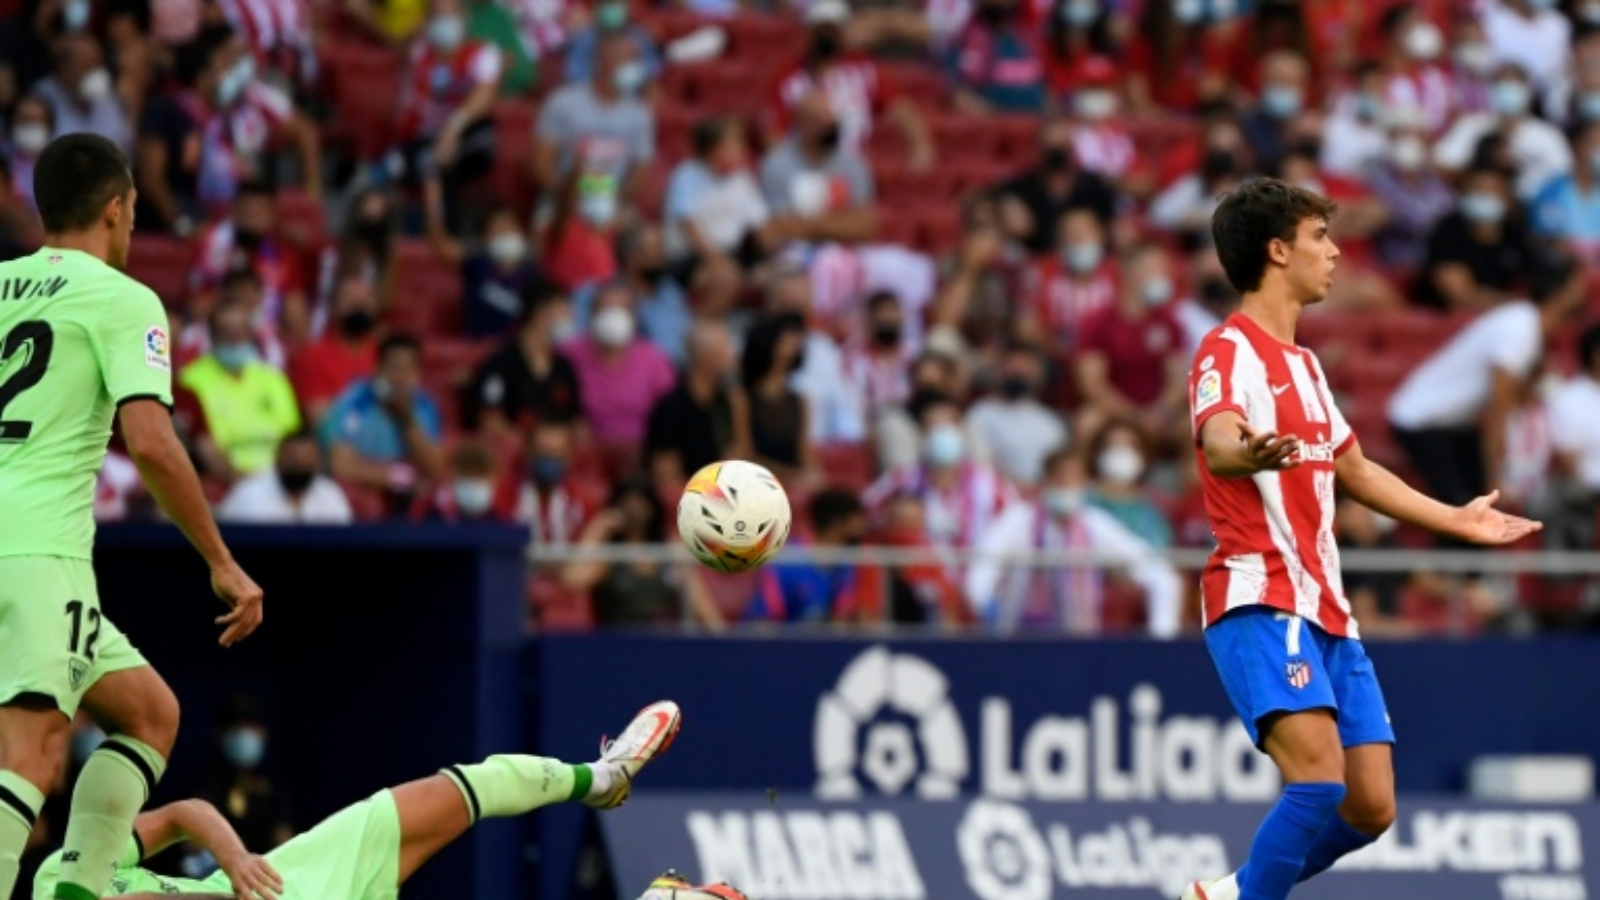 البرتغالي جواو فيليكس طرد في أواخر الشوط الثاني من المباراة أمام اتلتيك بلباو في الدوري الإسباني لكرة القدم.